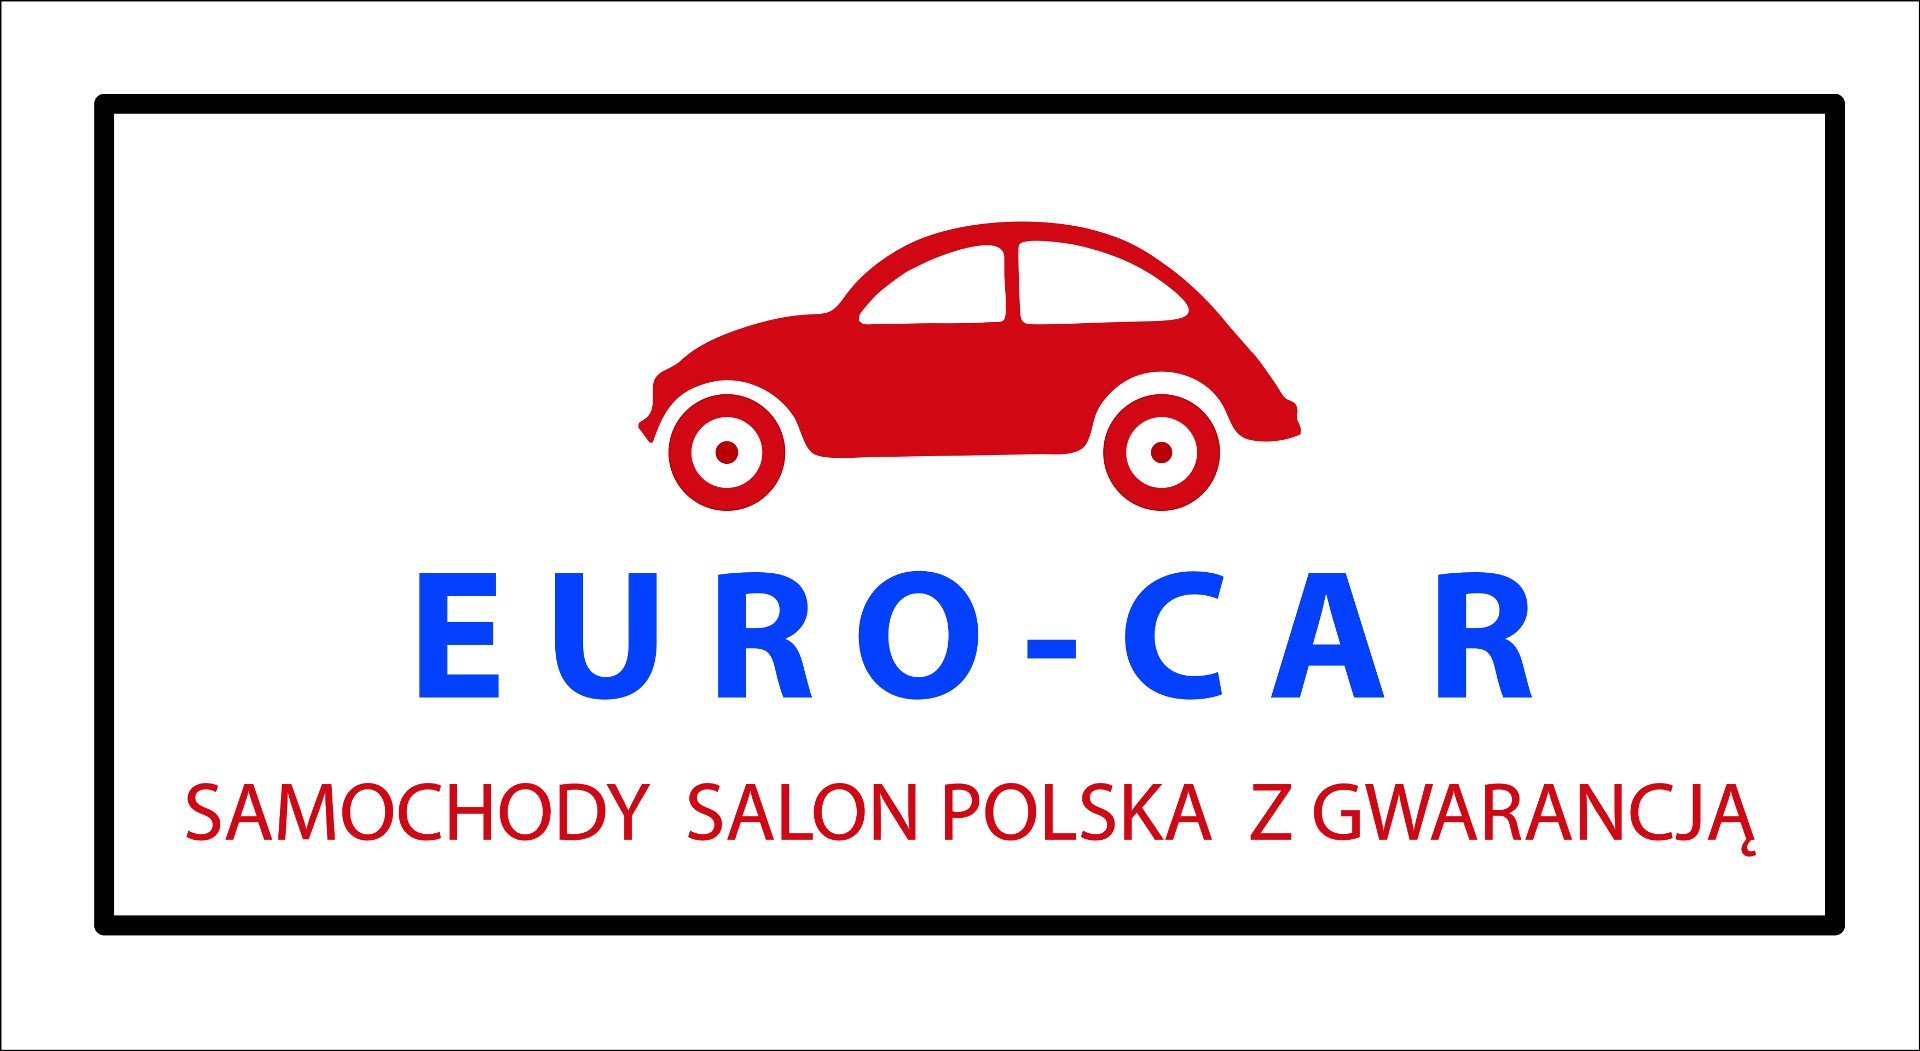 EURO-CAR SAMOCHODY Z GWARANCJĄ logo